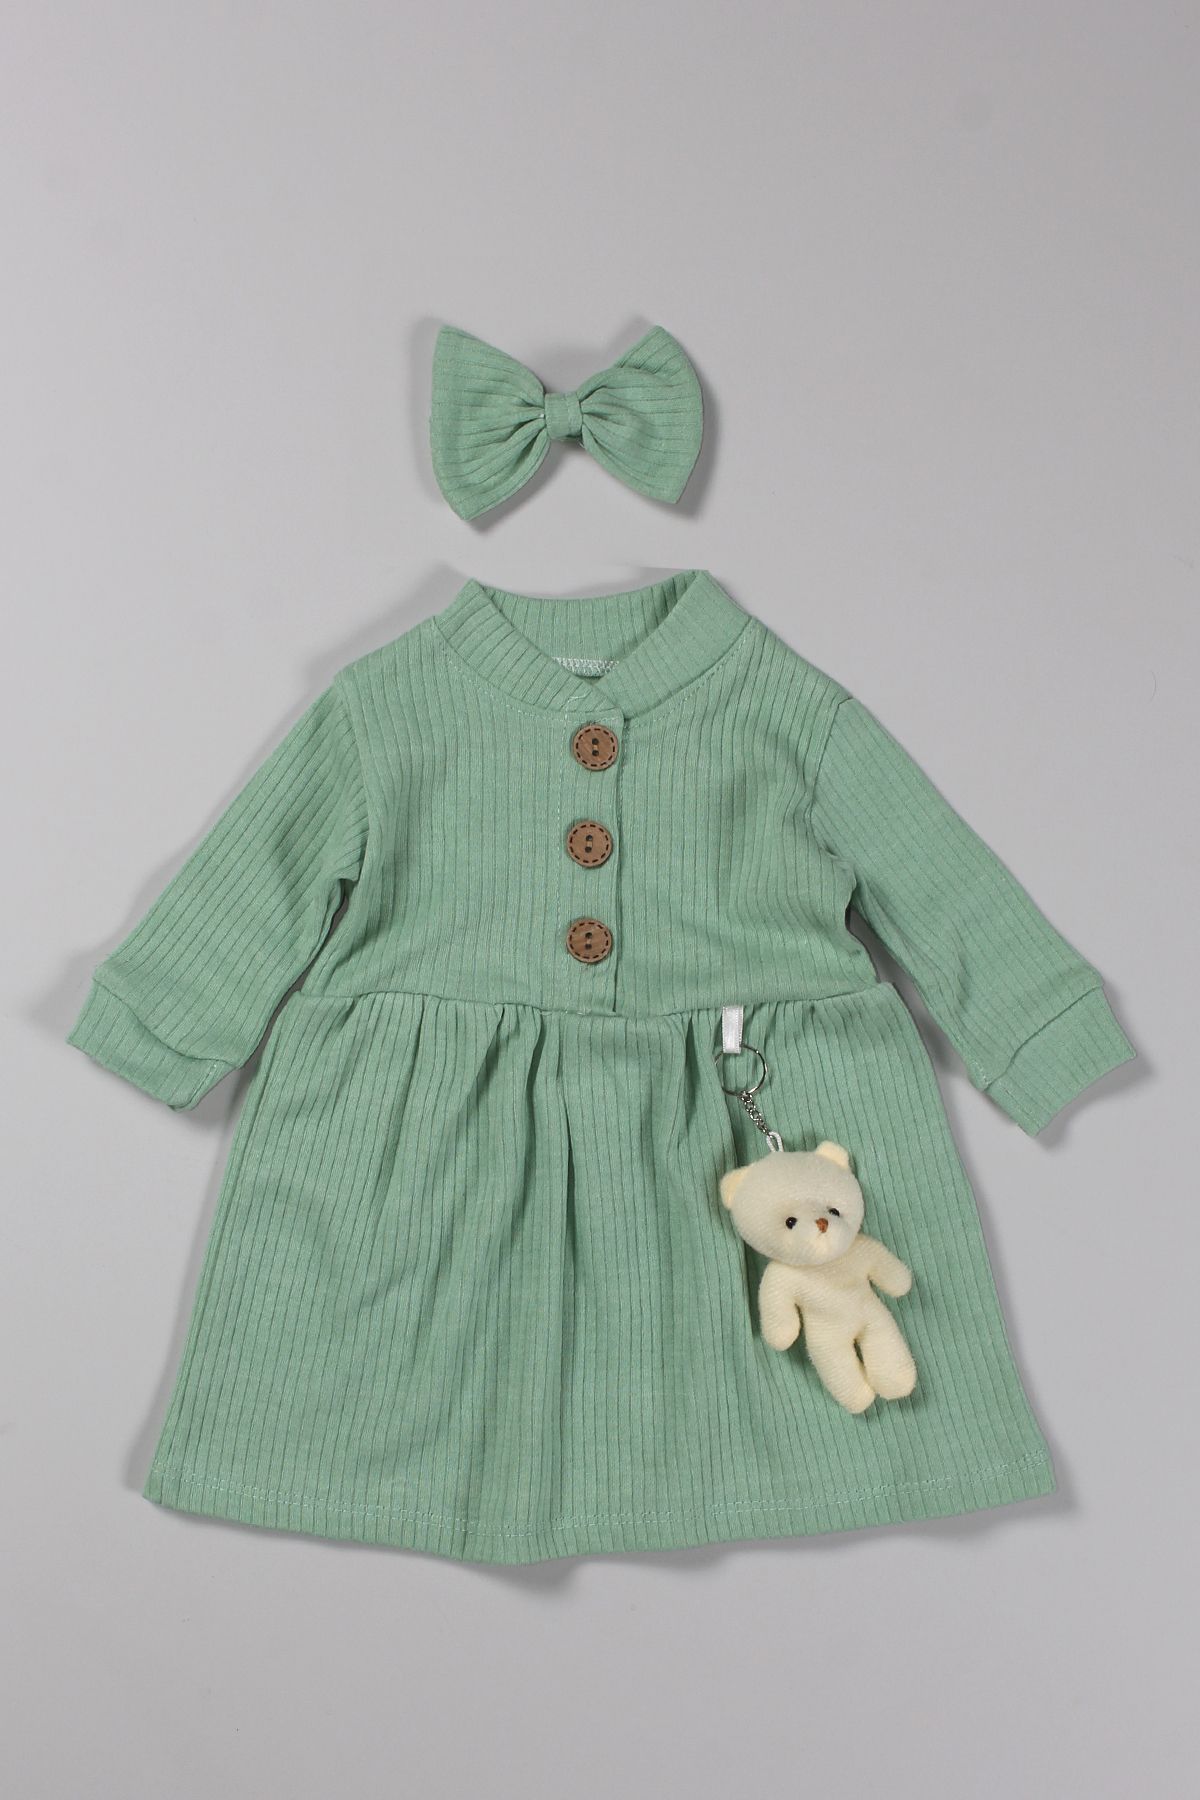 Peki Bebek 5 Al 4 Öde Çocuk Kız Pamuklu Ayıcık Figürlü Fiyonk Kıstırmalı Toka Fiyonk Kurdela Elbise 14710